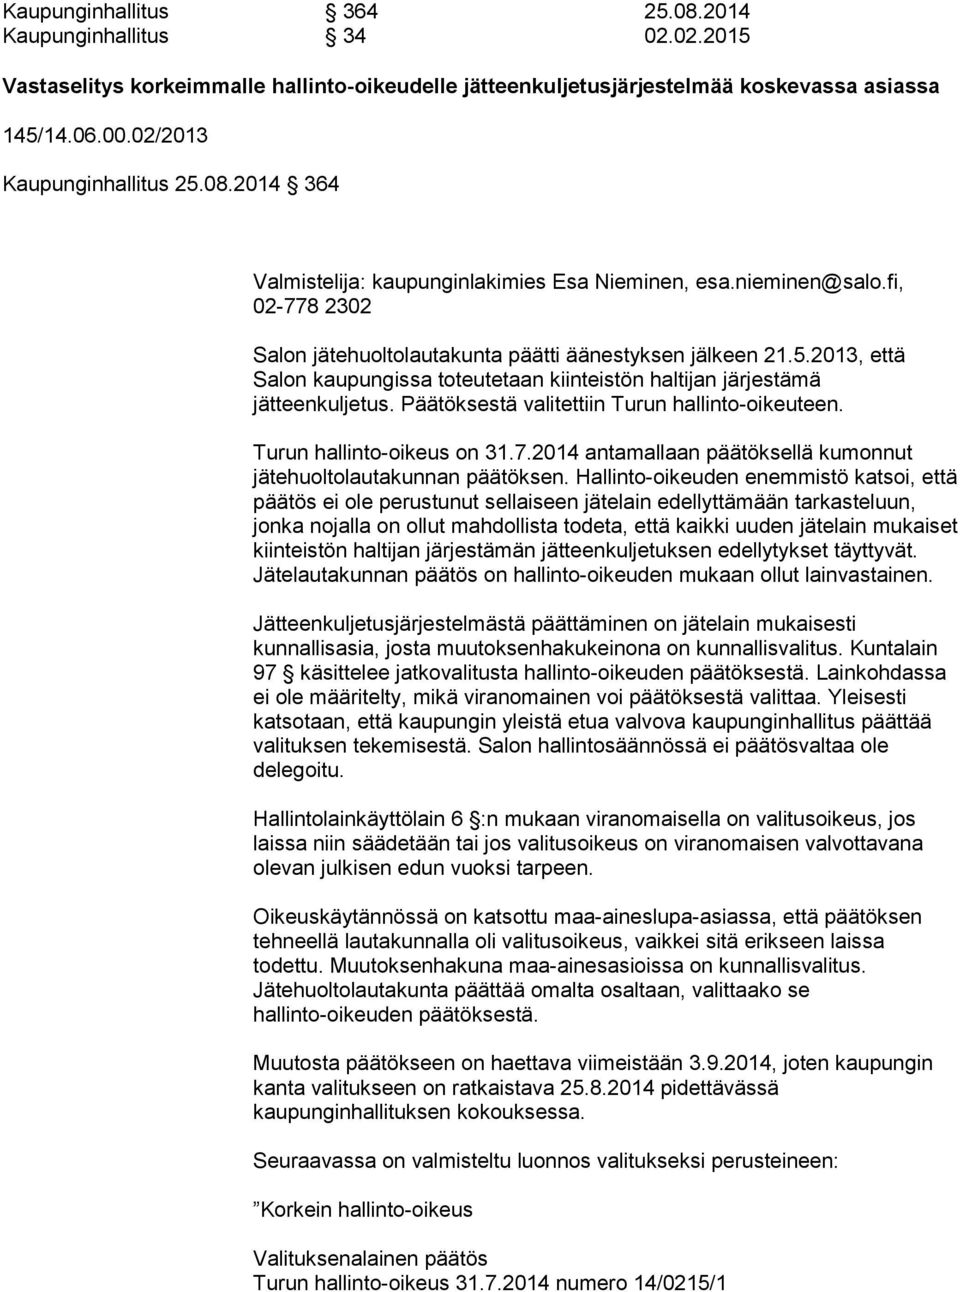 2013, että Salon kaupungissa toteutetaan kiinteistön haltijan järjestämä jätteenkuljetus. Päätöksestä valitettiin Turun hallinto-oikeuteen. Turun hallinto-oikeus on 31.7.